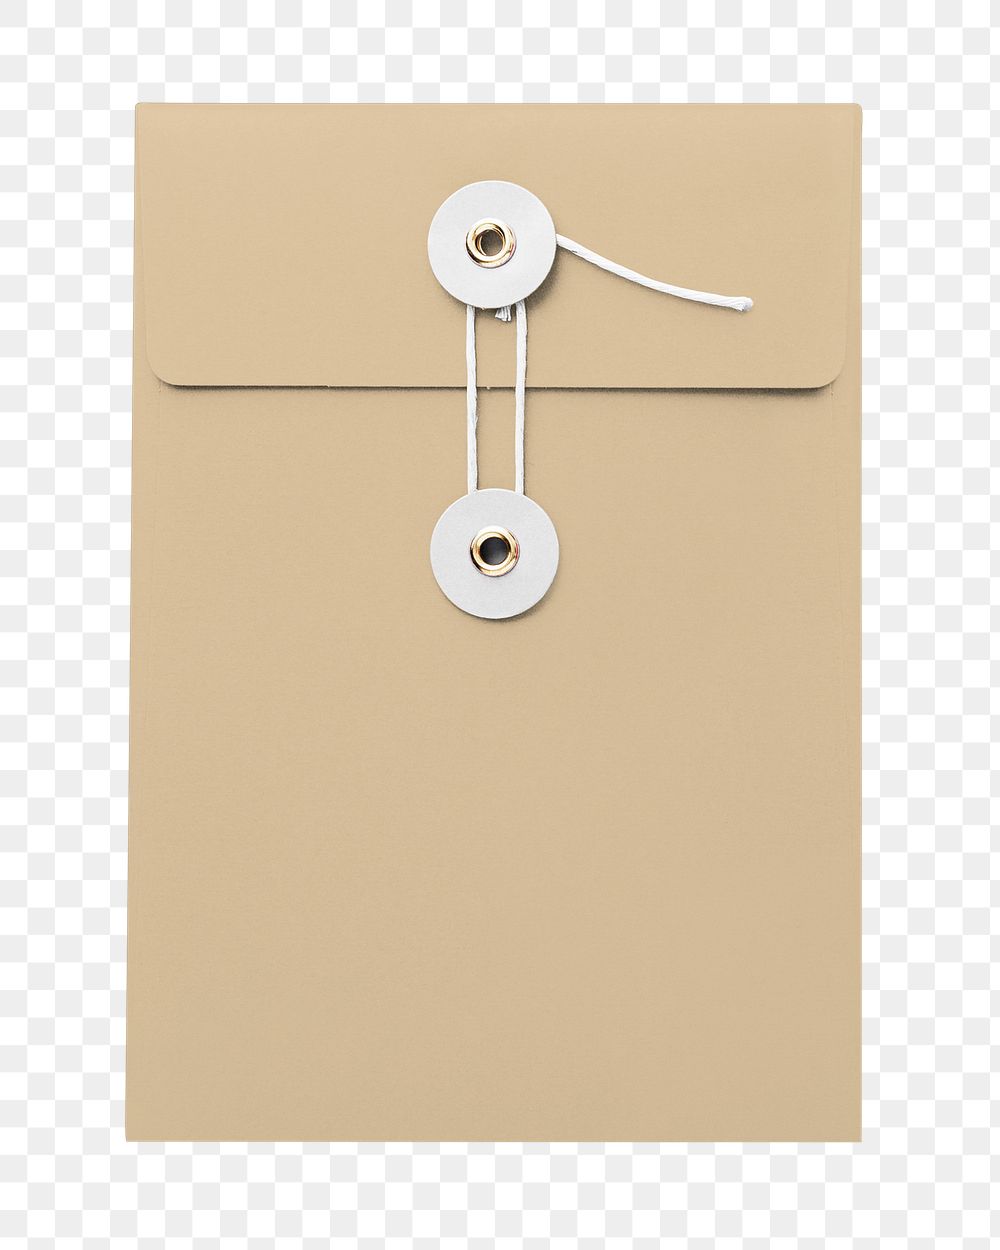 String tie envelope png element, green design, transparent background